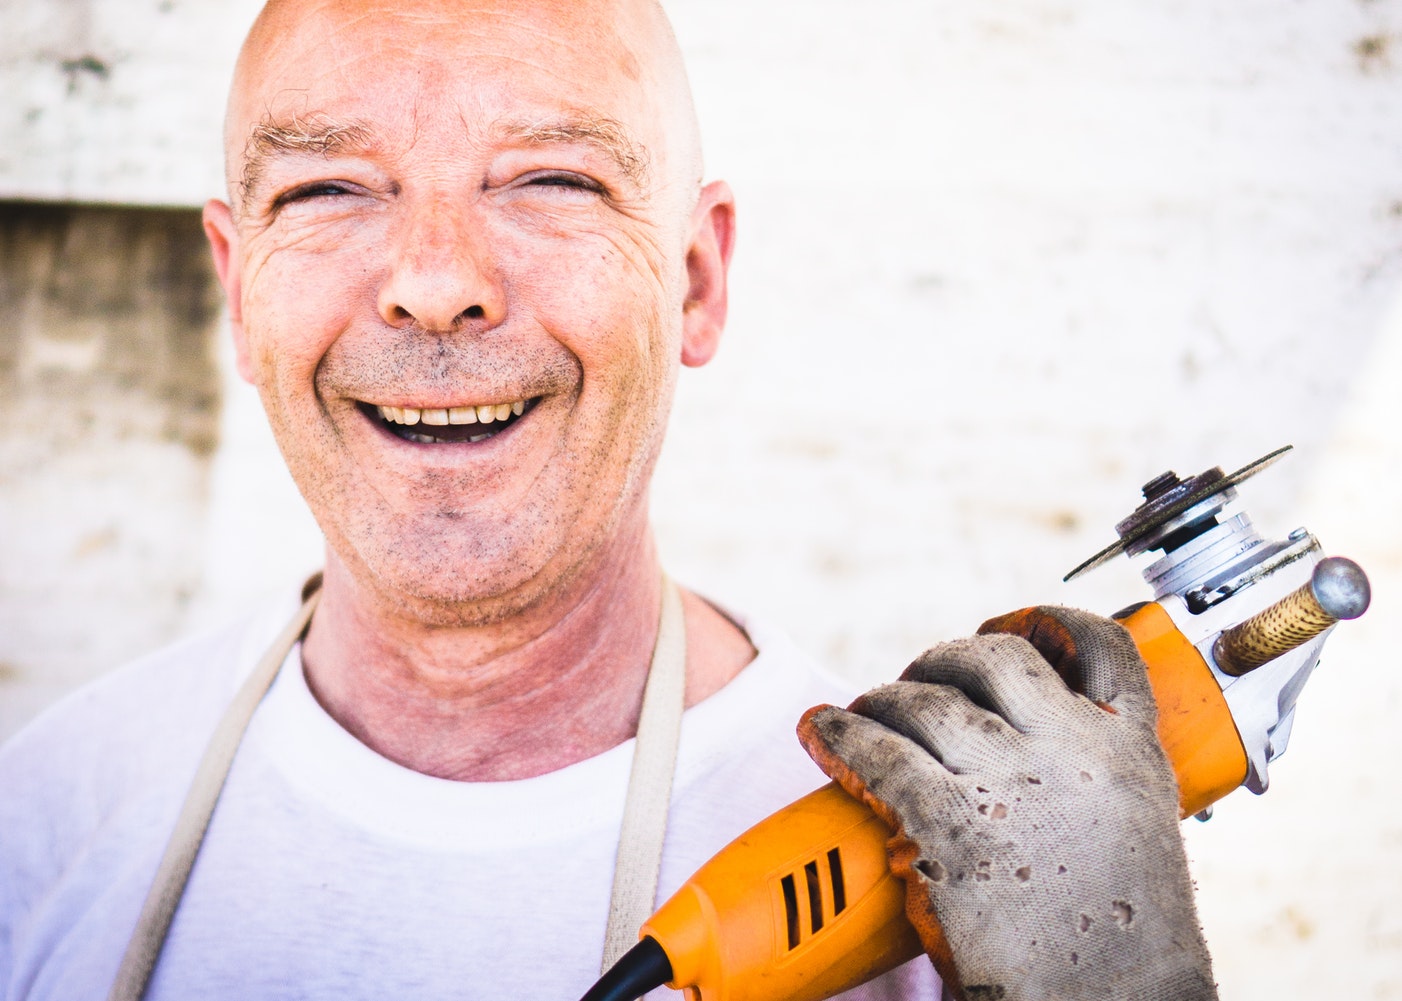 man holding tool smiling